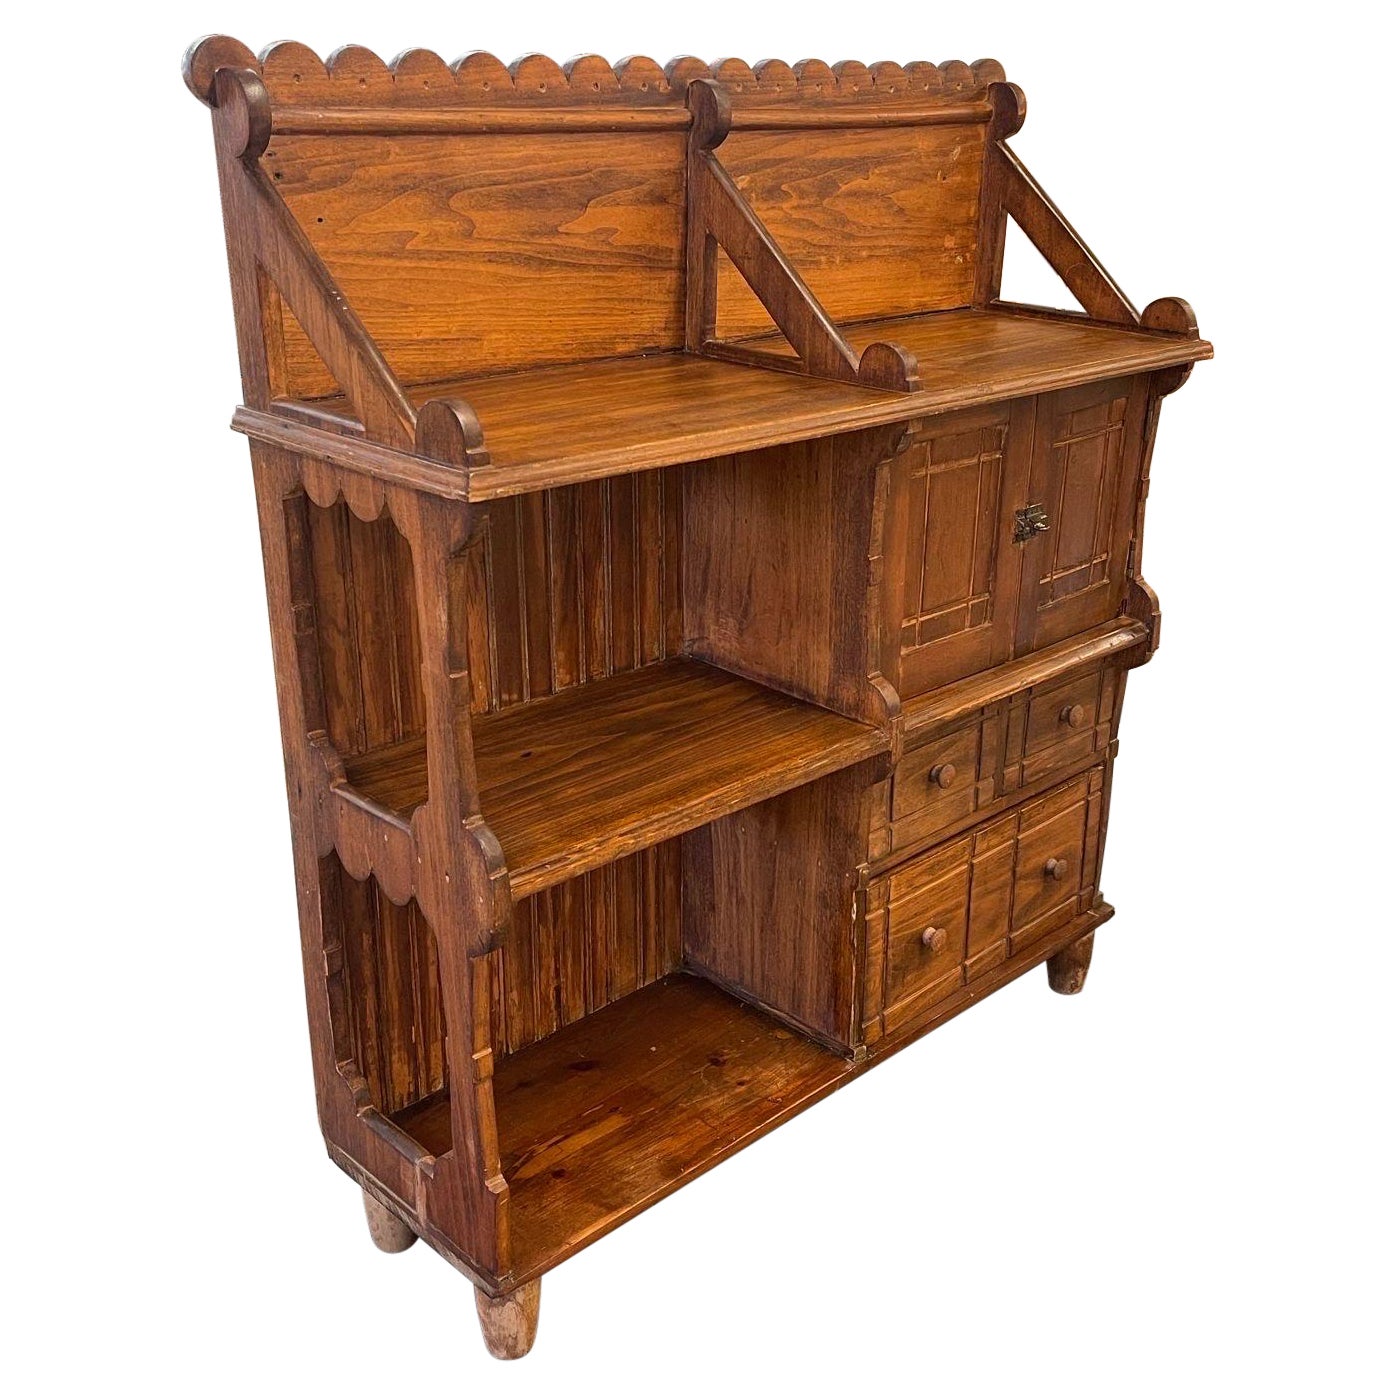 Vintage-Bücherregal und Aufbewahrungsschrank aus geschnitztem Holz im primitiven Arts and Craft-Stil